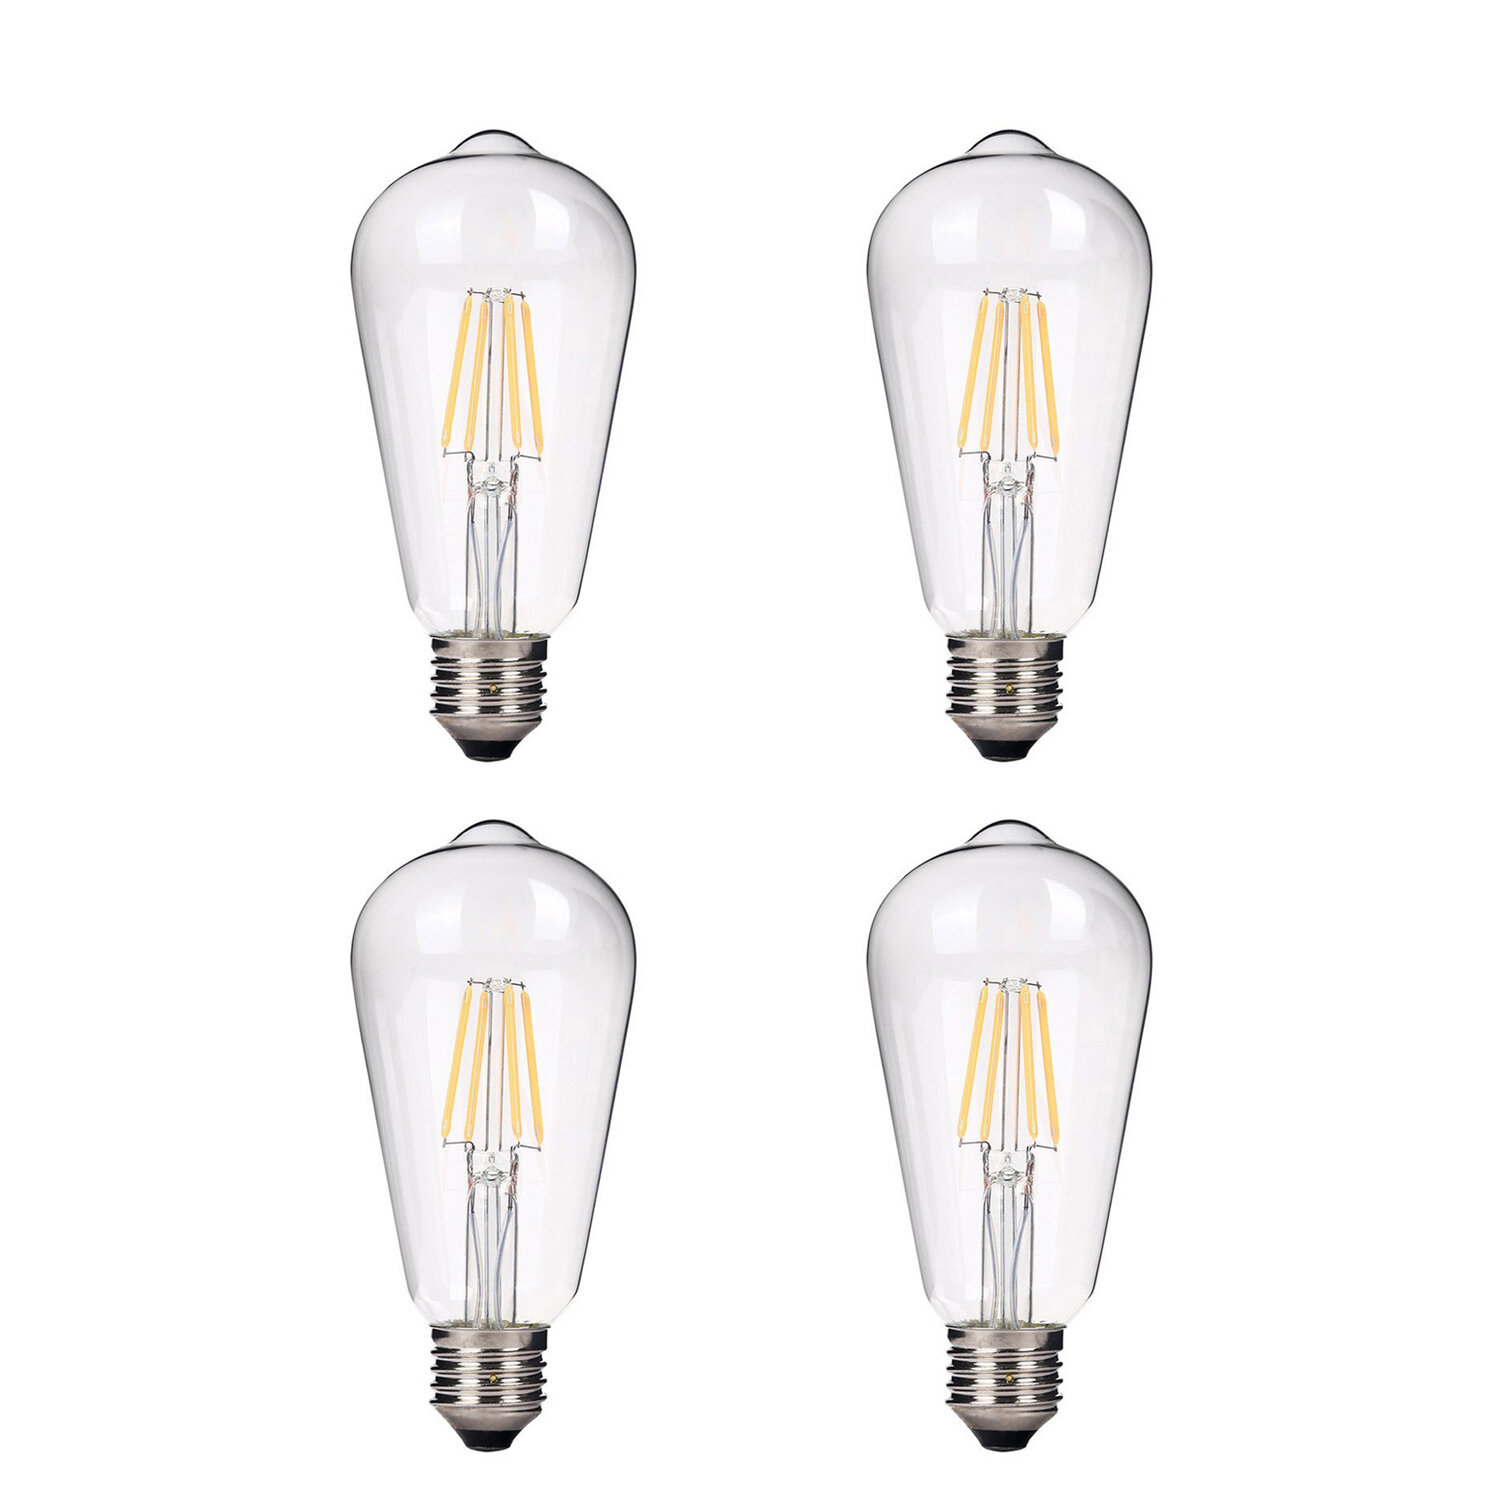 Leugen Faeröer hardware emark 4 Watt (40 Watt Equivalent), ST64 LED, Dimmable Light Bulb, Warm  White (2700K) E26/Meduim (Standard) Base & Reviews | Wayfair